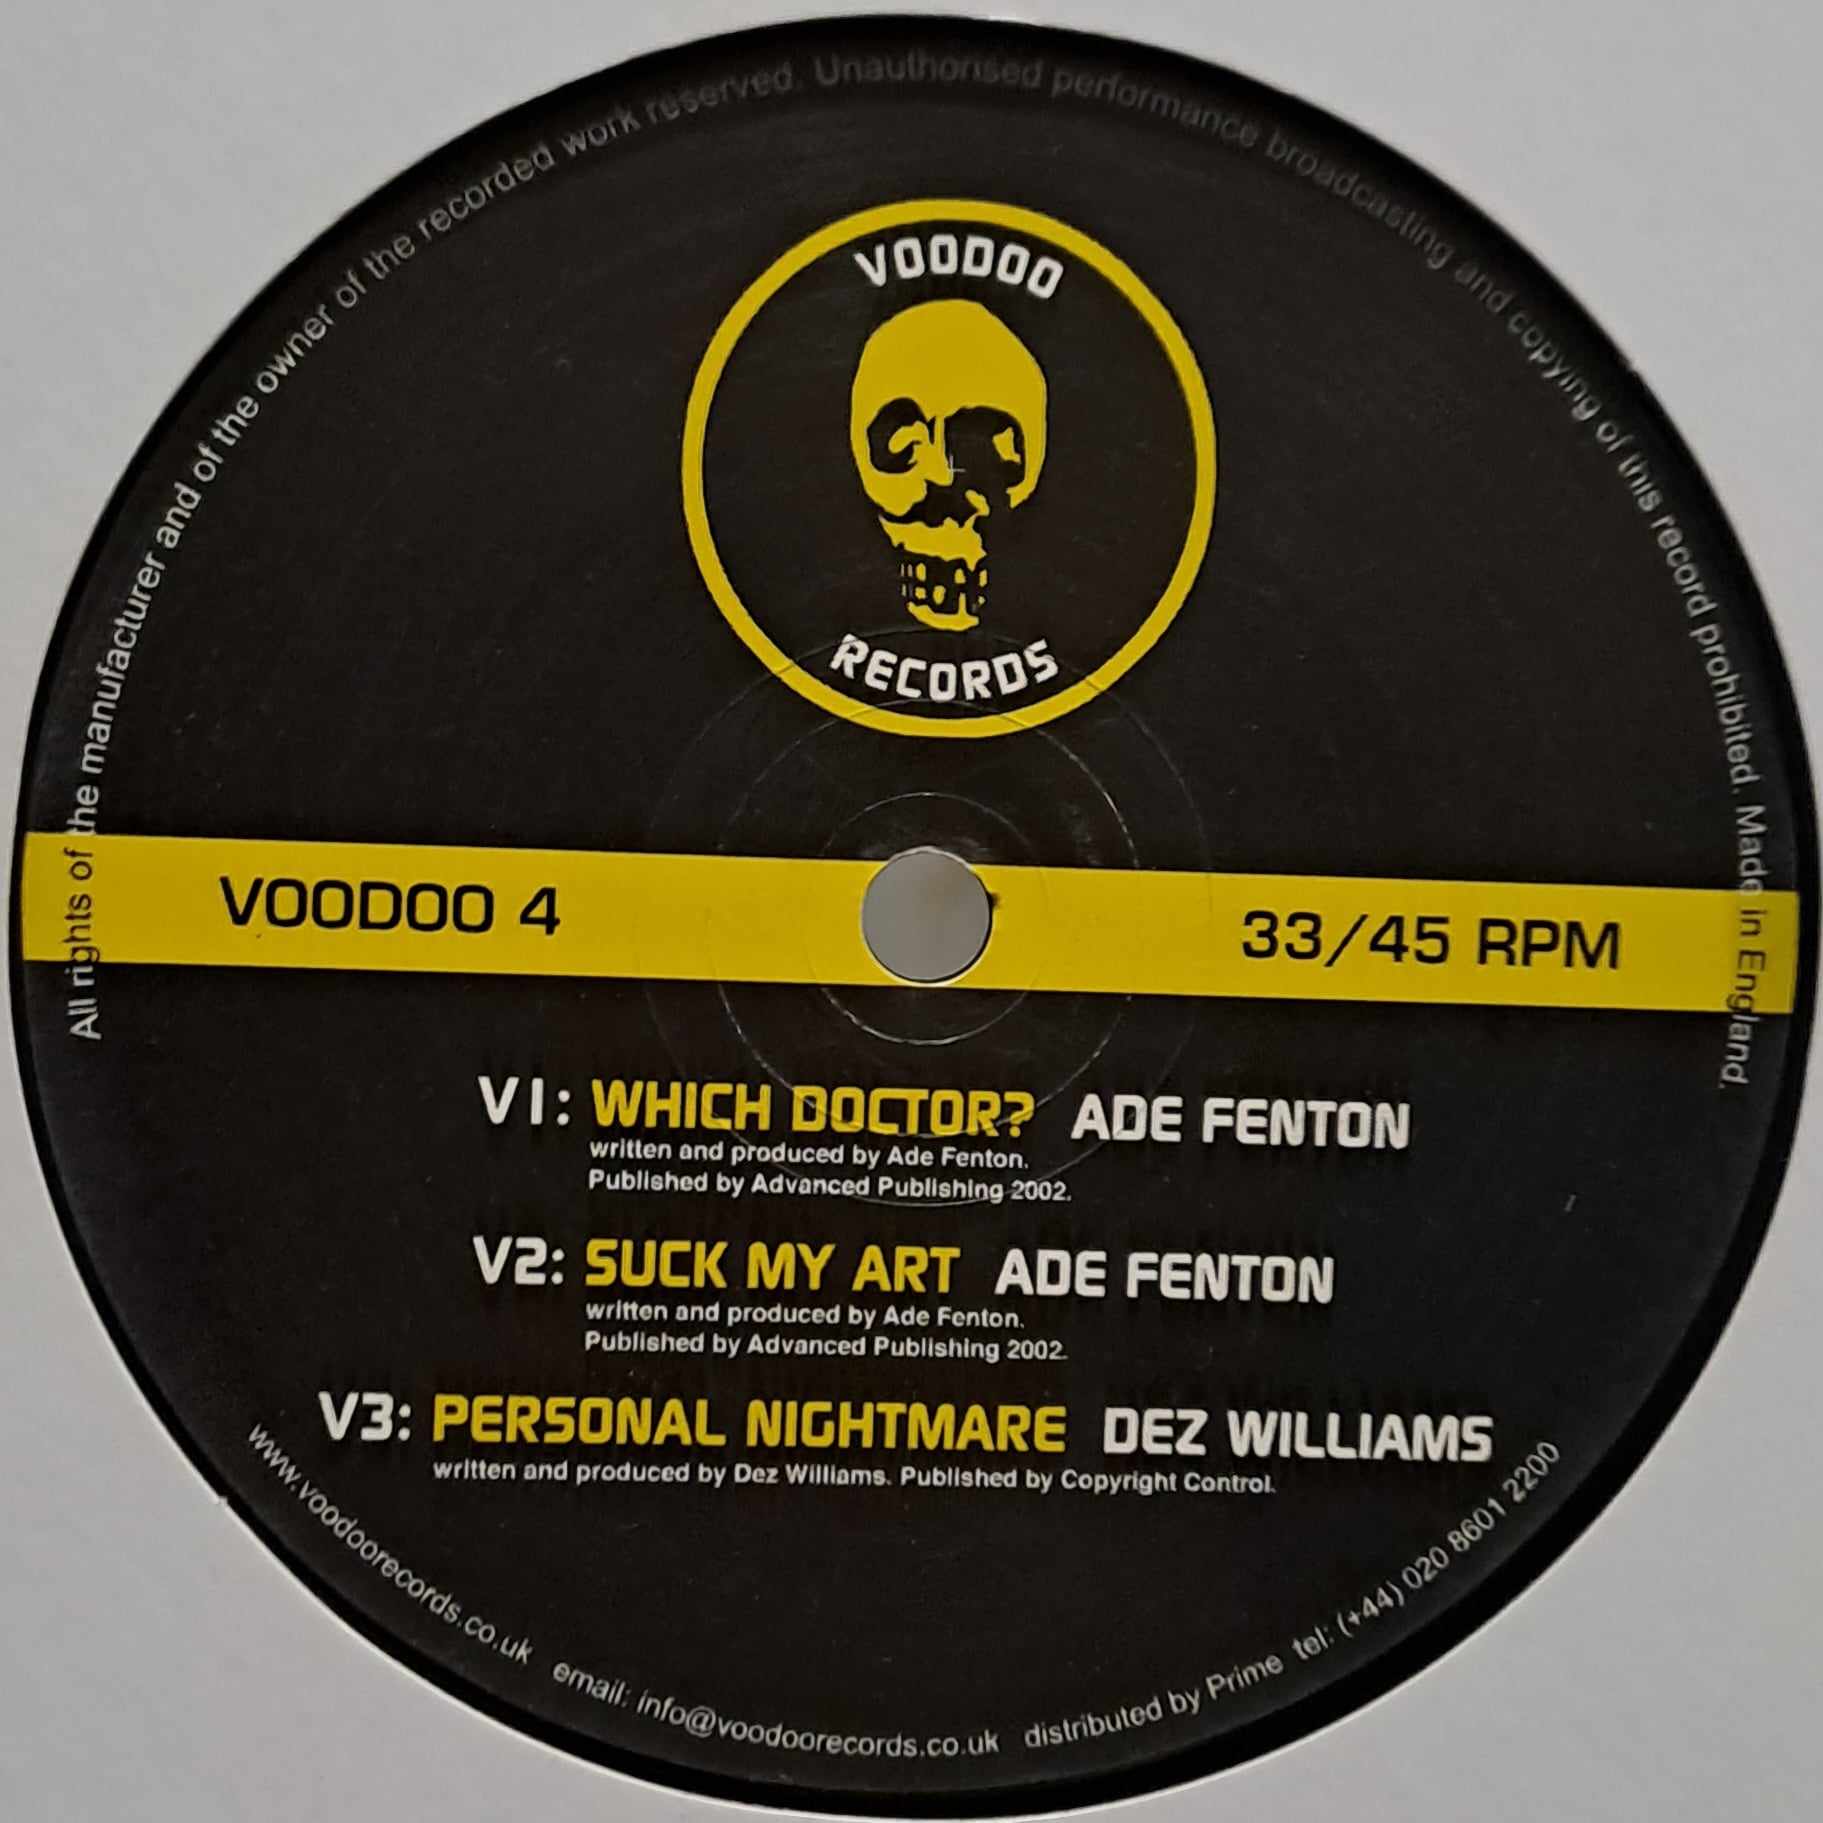 Voodoo 4 - vinyle techno